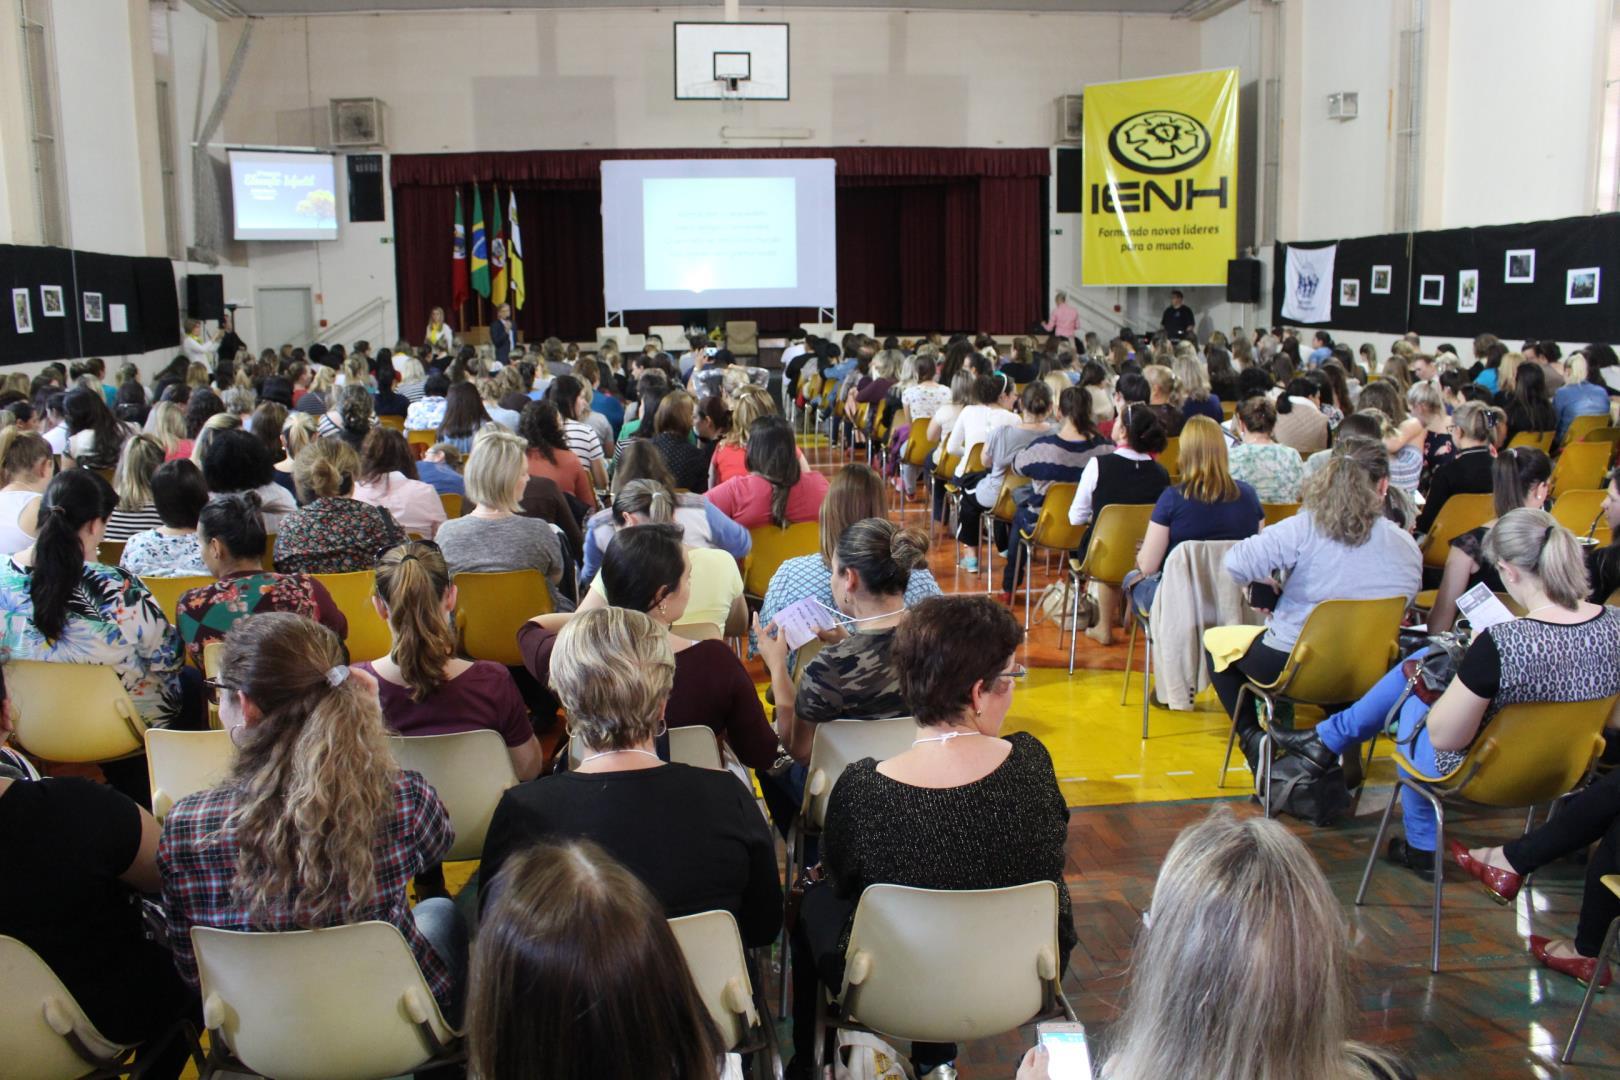 Simpósio Brasileiro de Educação Infantil reúne 560 participantes na IENH